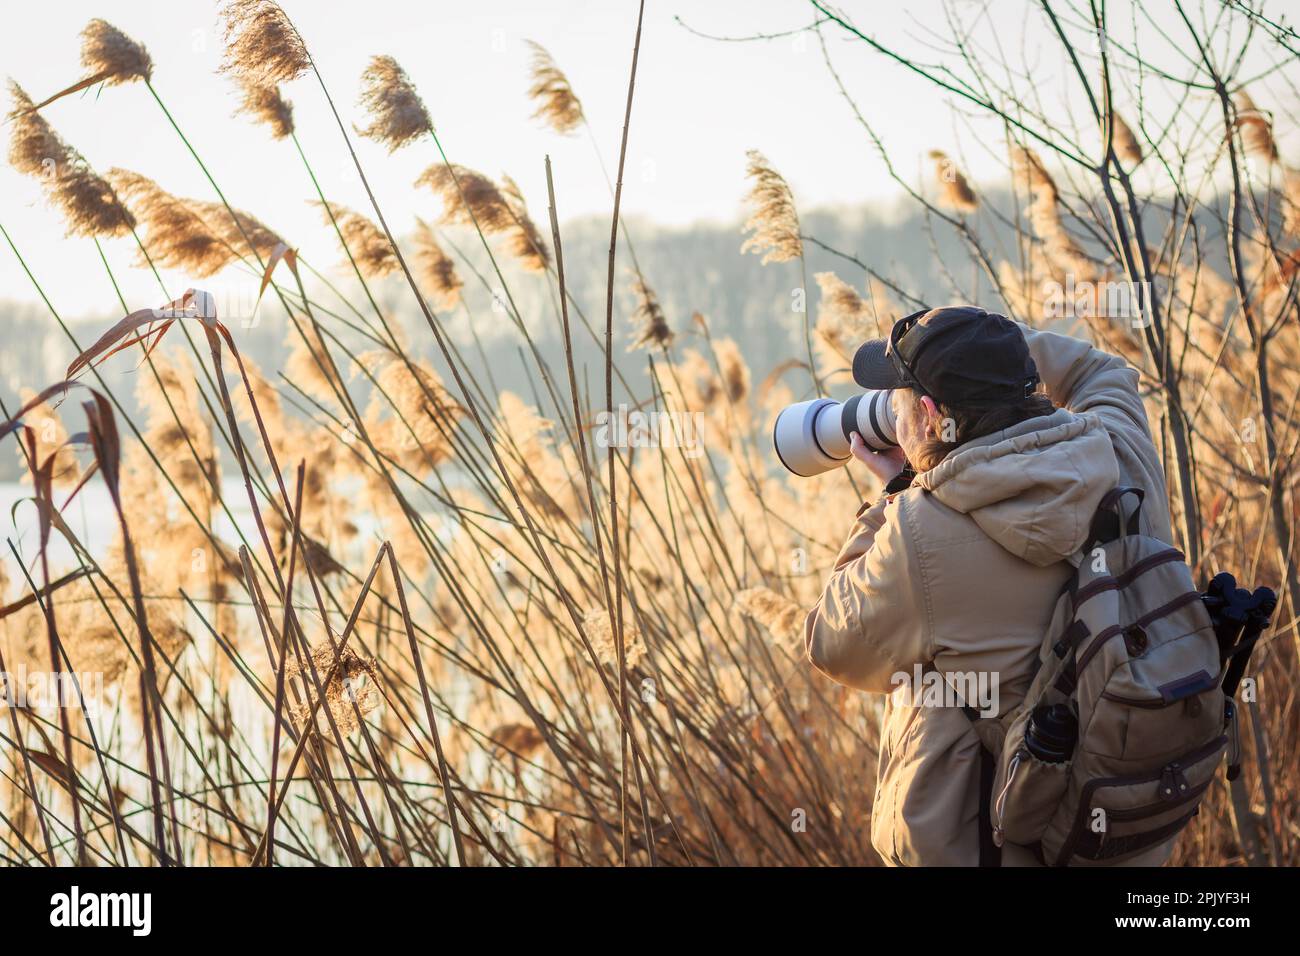 Photographe avec un appareil photo caché derrière les roseaux au lac pour prendre des photos de la faune. Activités de loisirs en plein air Banque D'Images